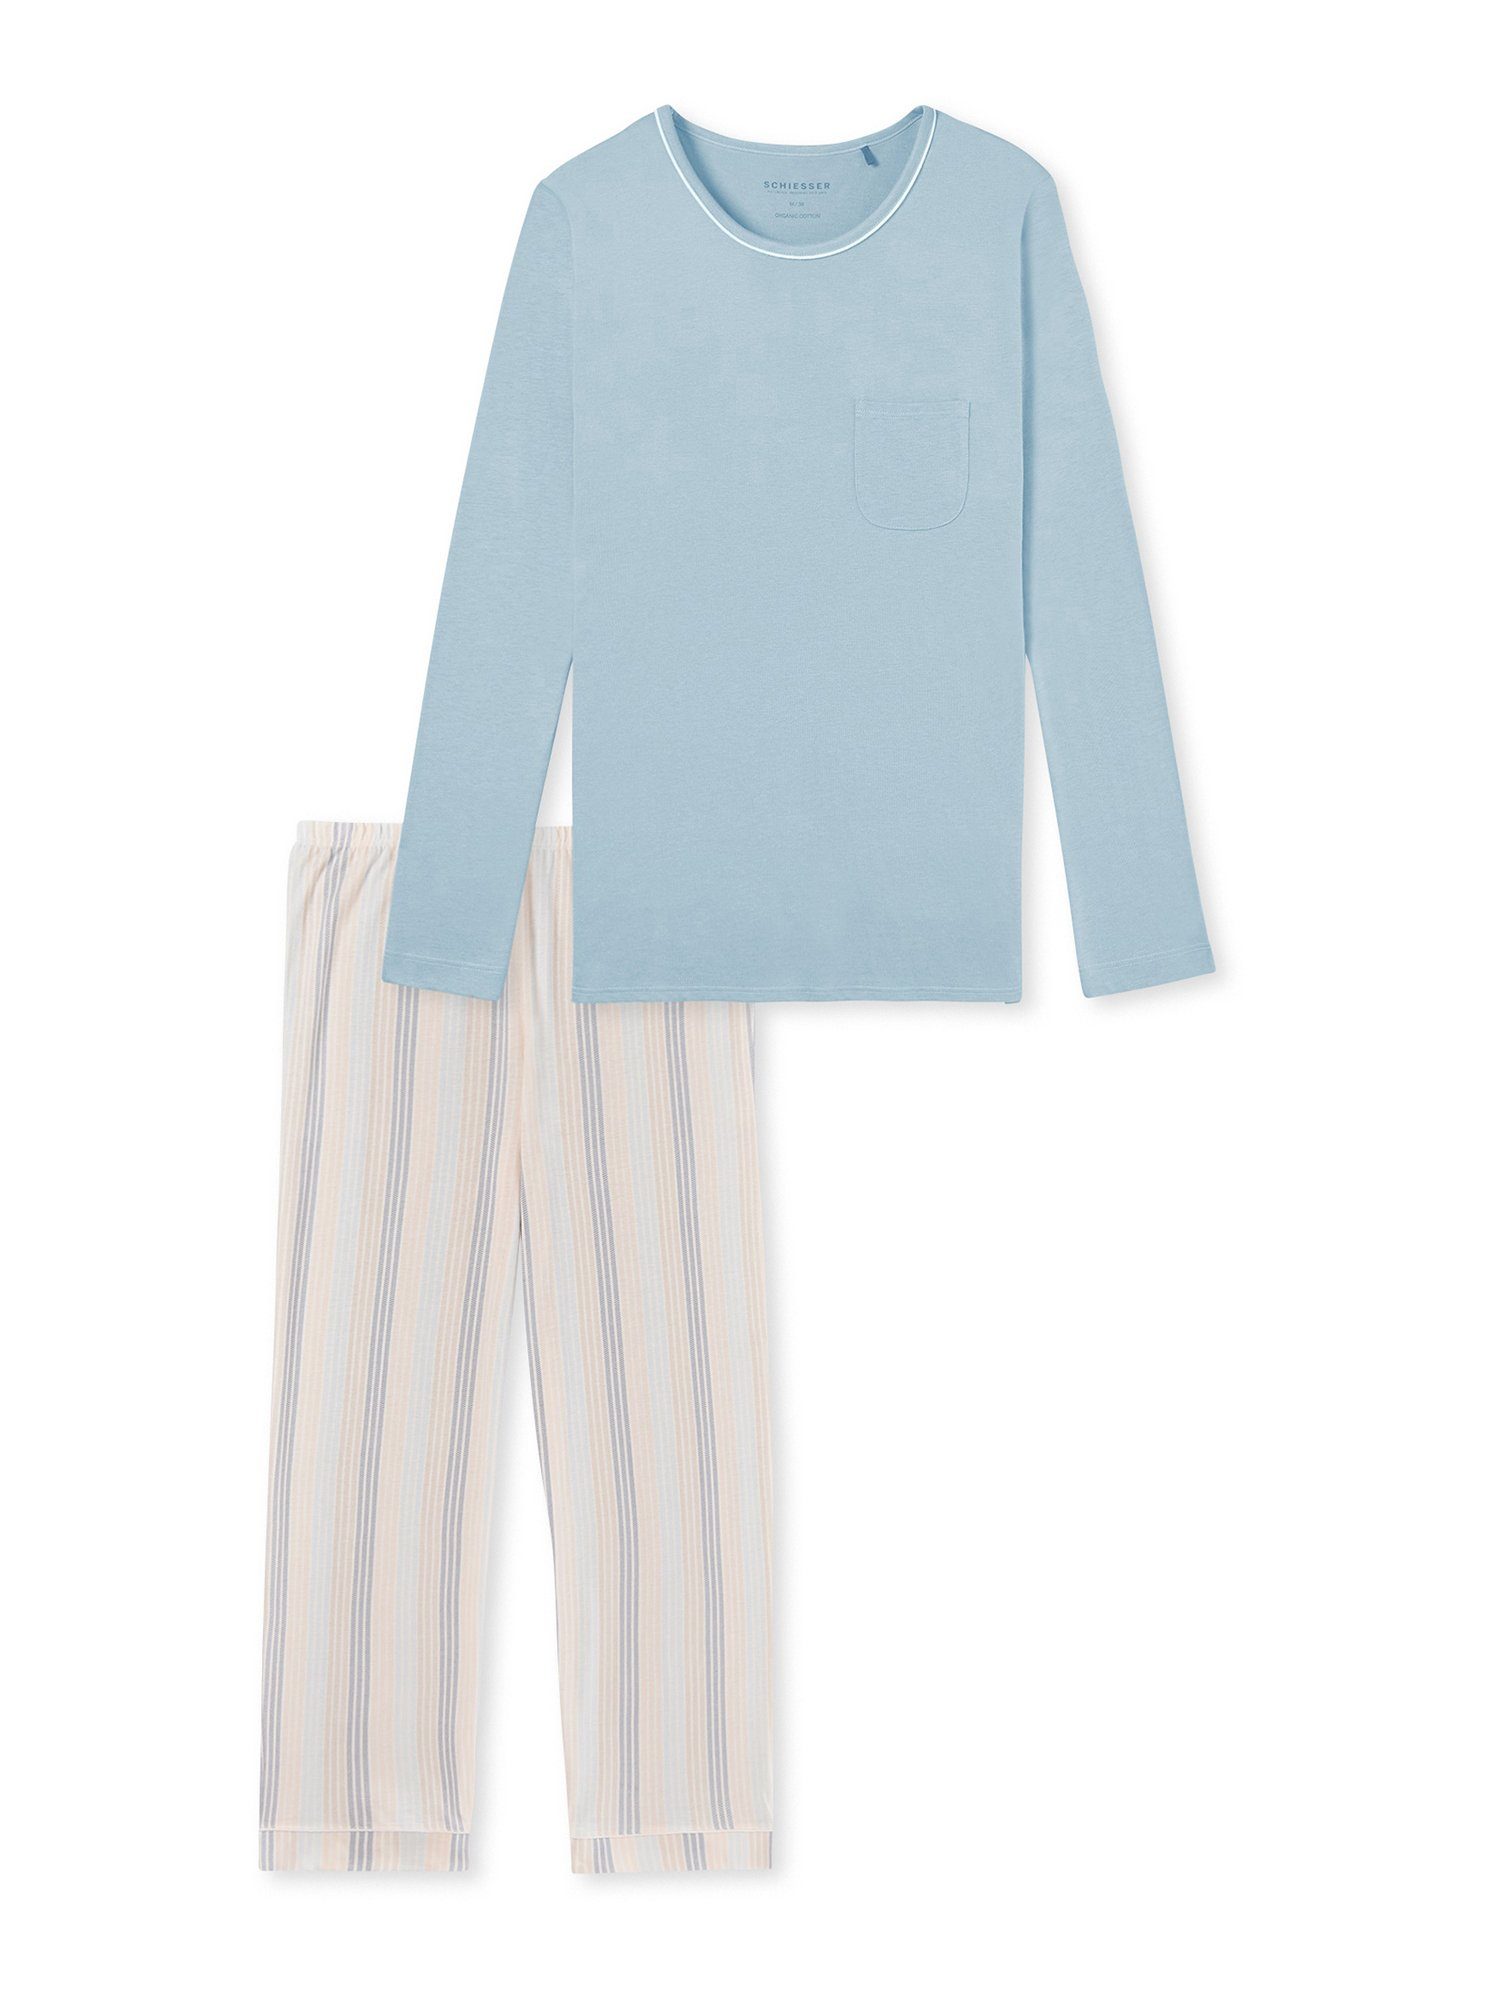 Schiesser Pyjama lang - Comfort Nightwear (2 tlg) schlafanzug schlafmode bequem